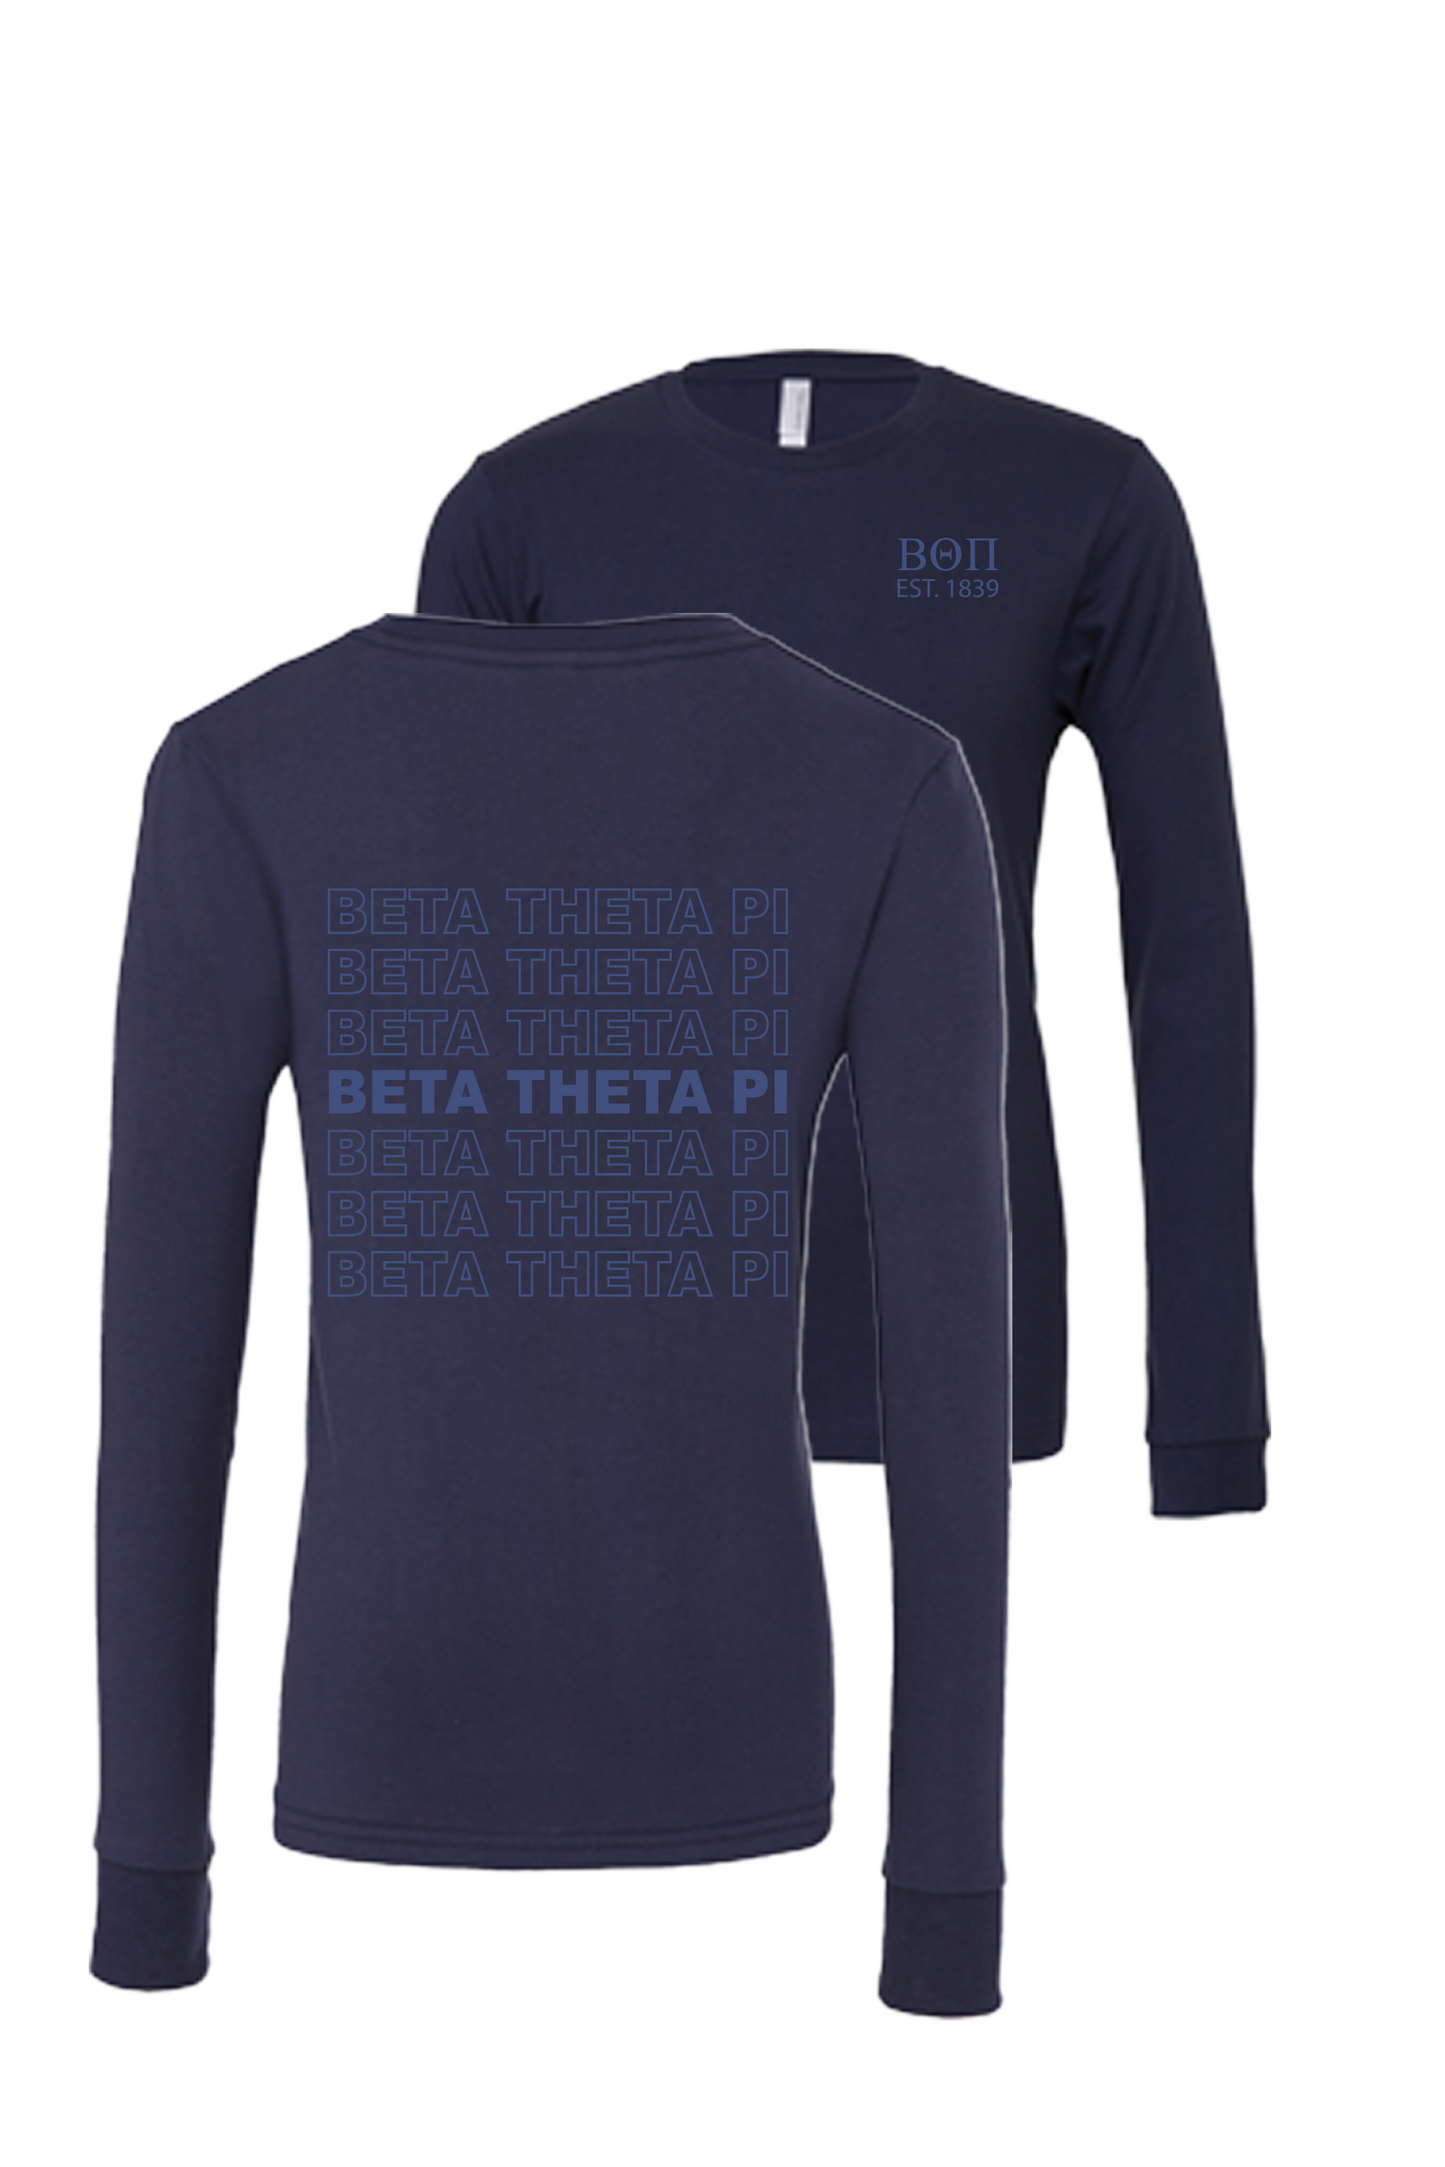 Beta Theta Pi Repeating Name Long Sleeve T-Shirts